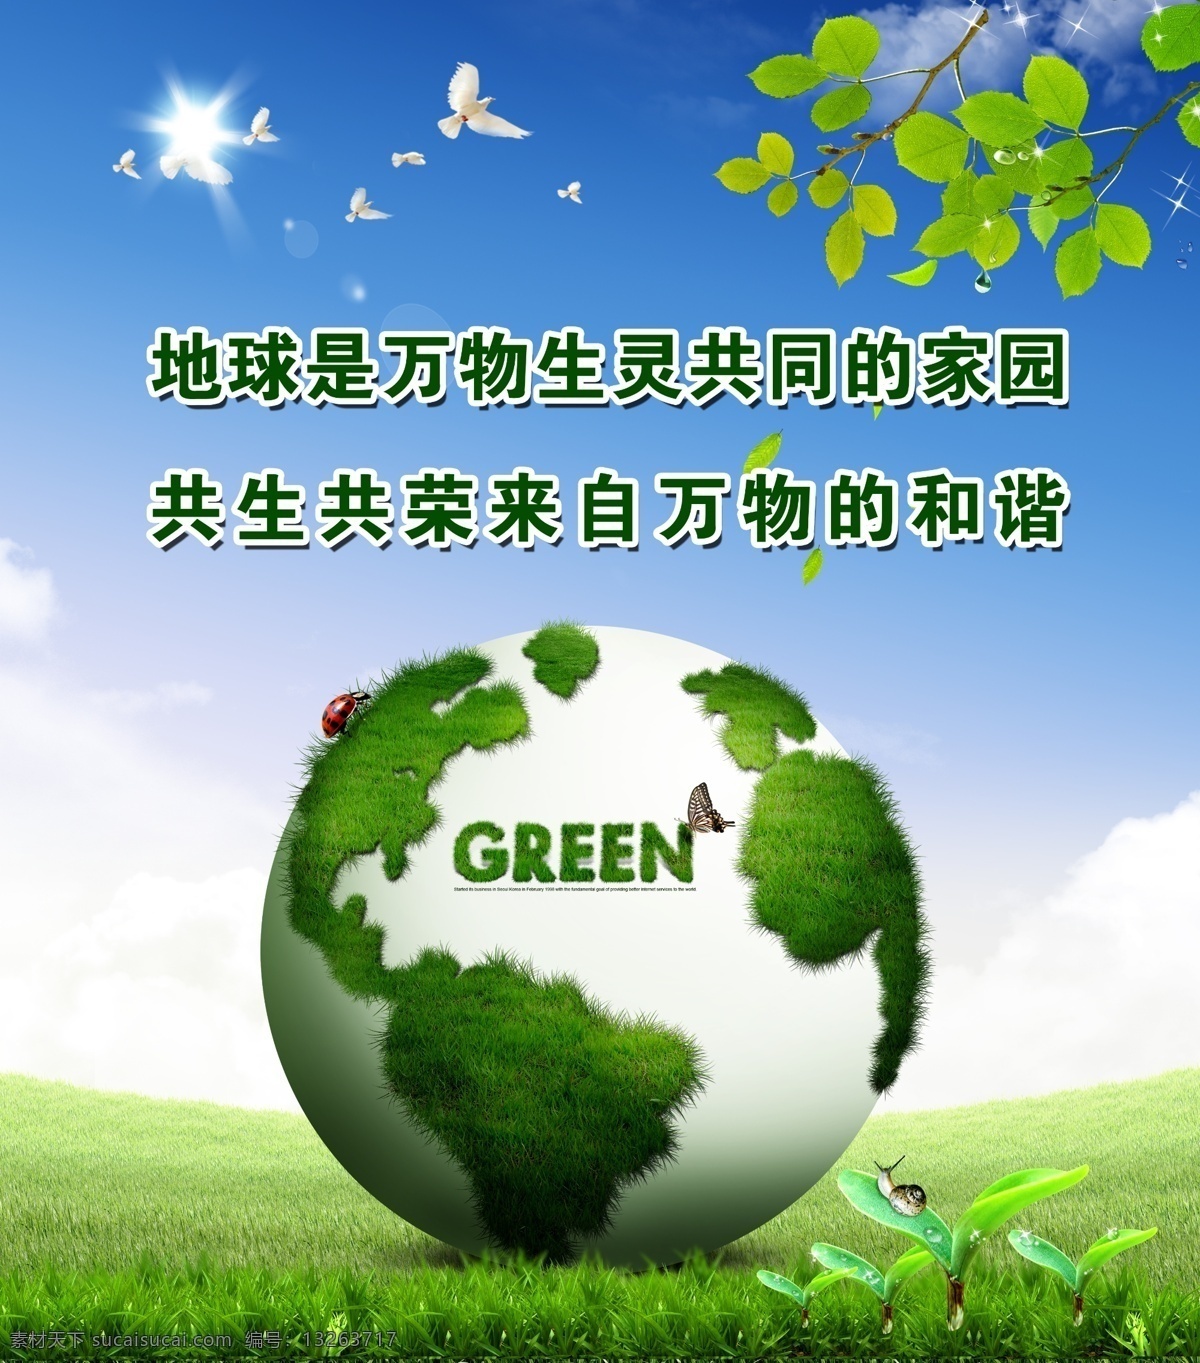 保护环境 环保 地球 保护地球 绿色地球 鸽子 绿叶 树叶 绿草 蜗牛 蓝天白云 草地 草坪 广告设计模板 源文件